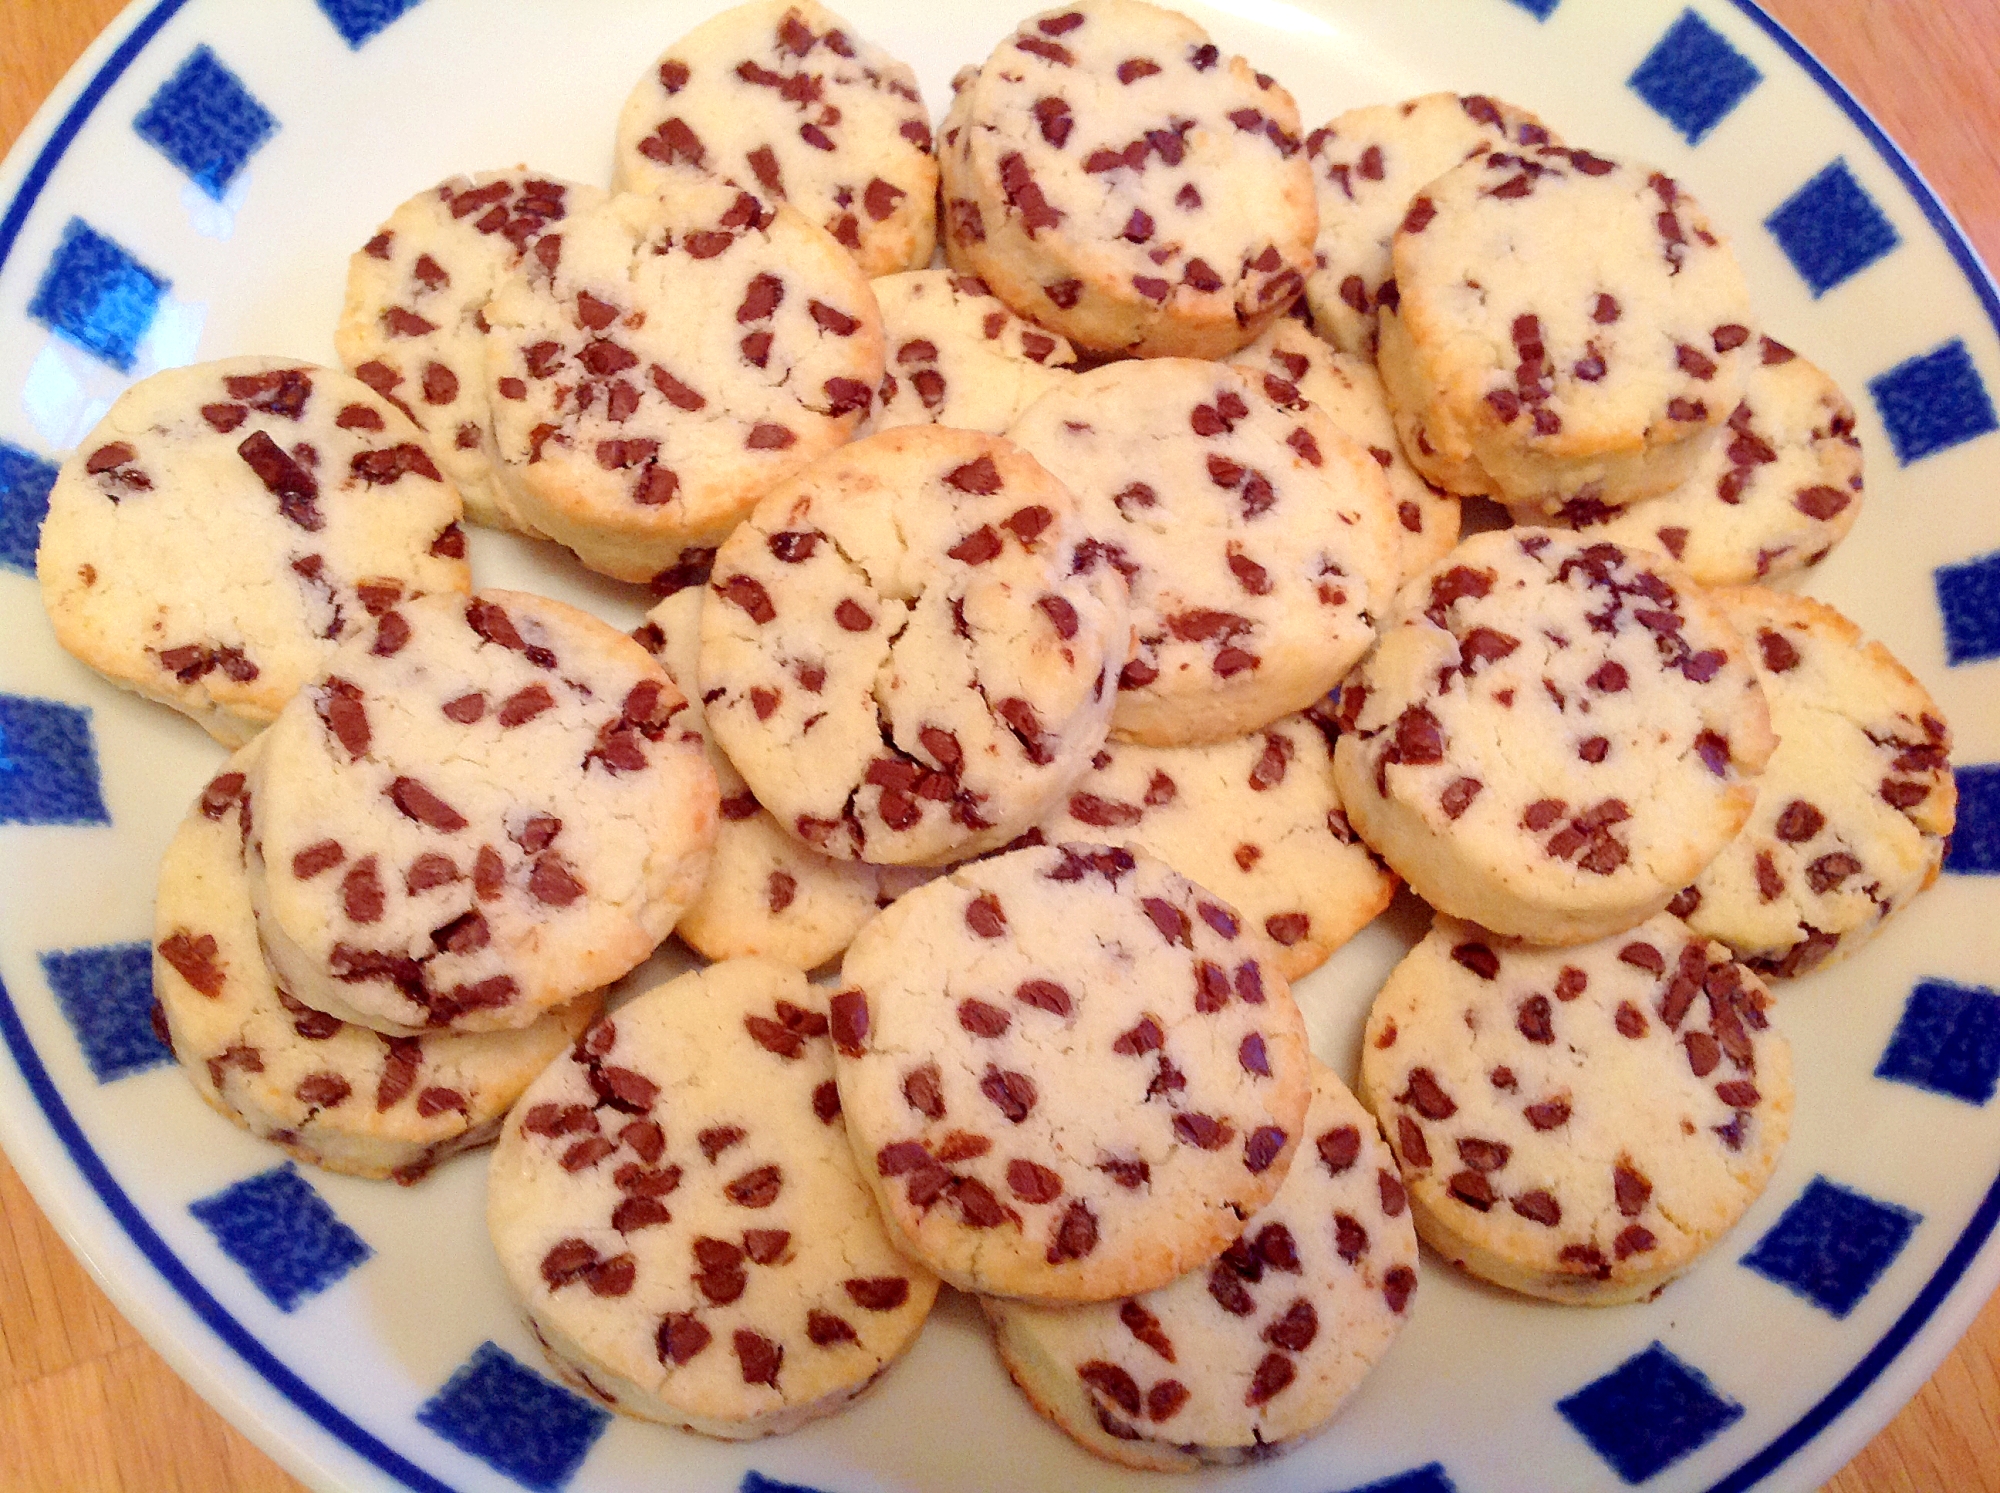 バニラココナッツチョコチップクッキー